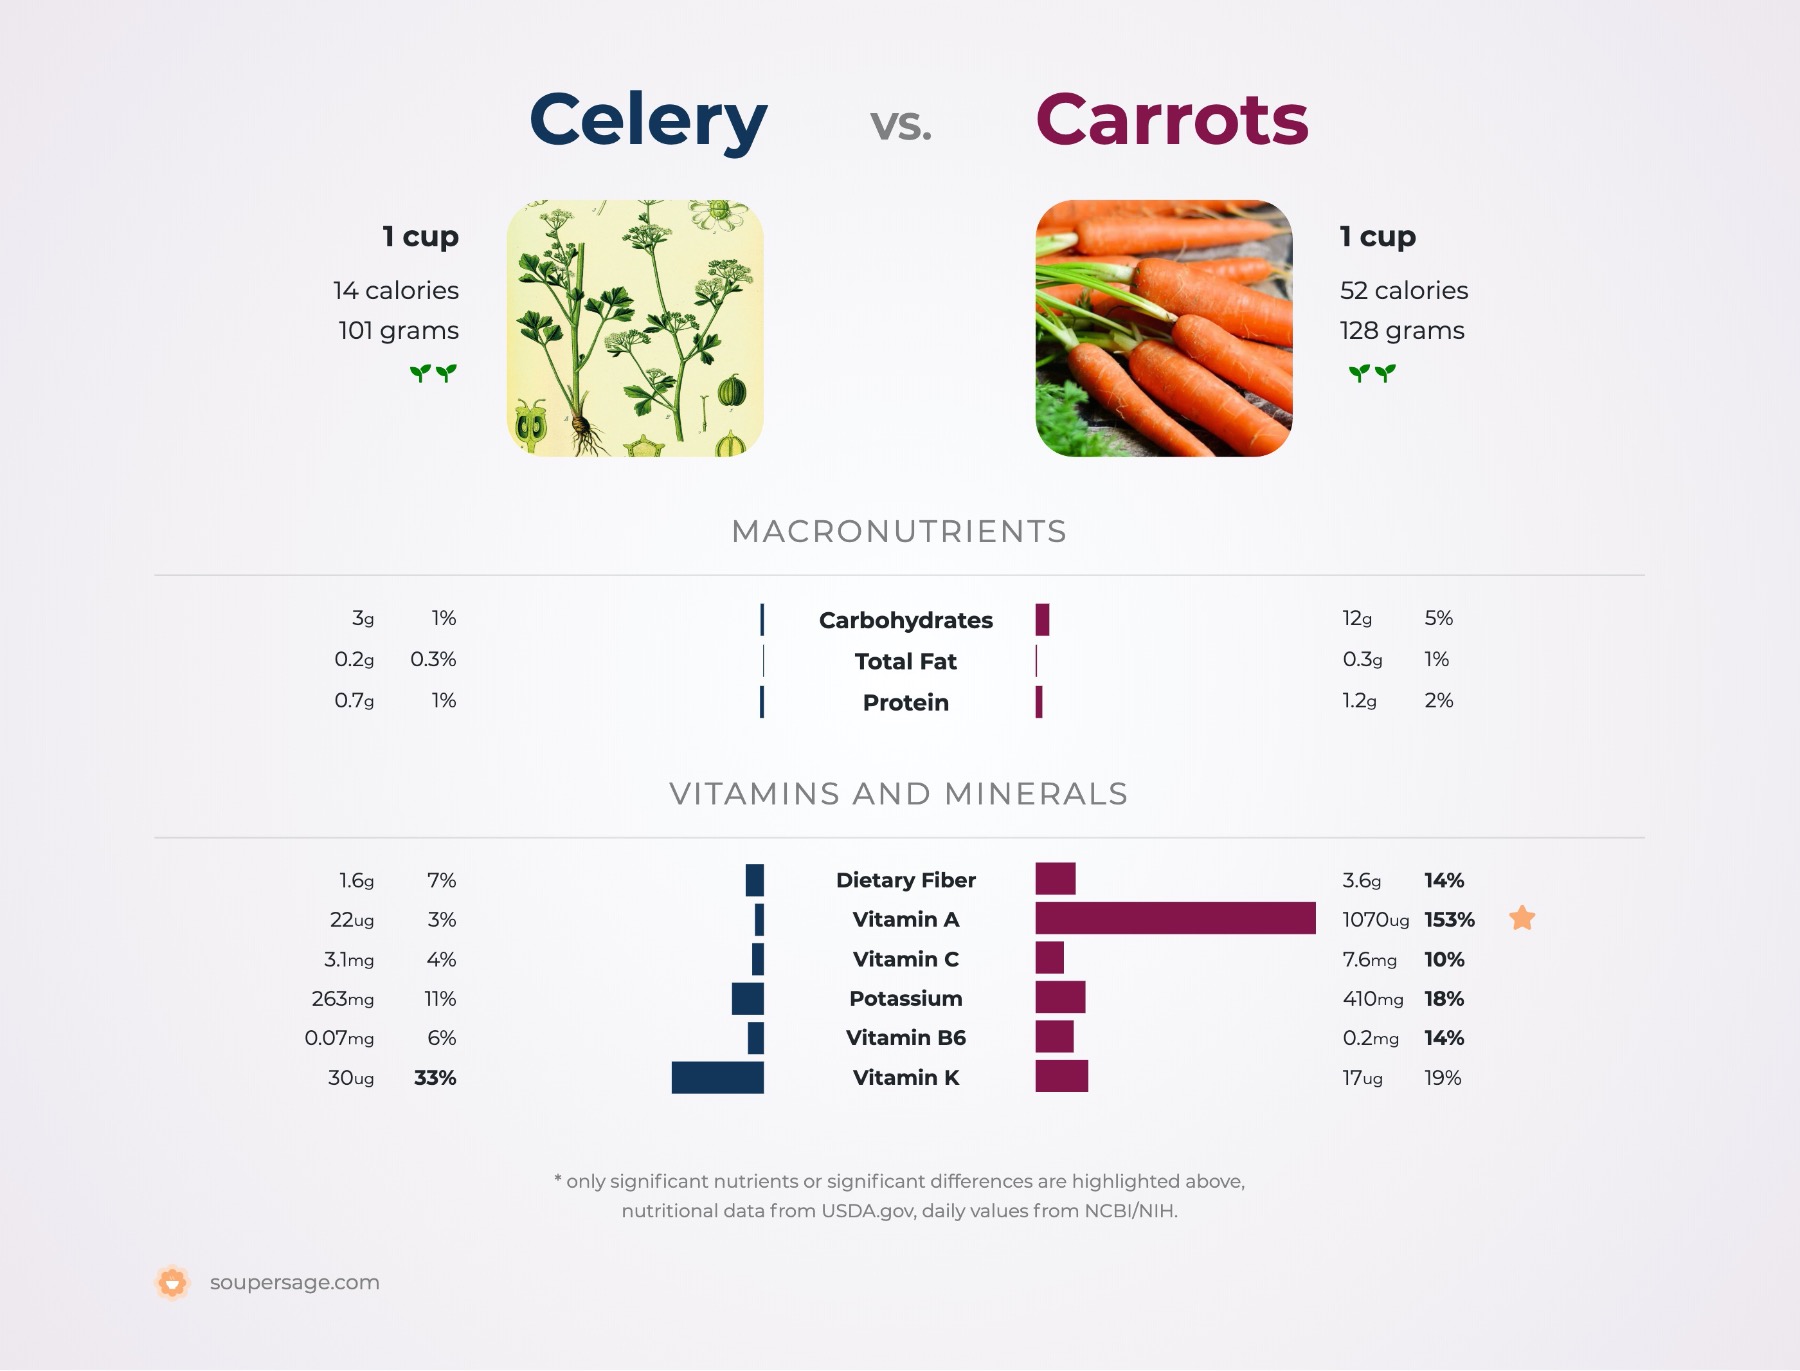 nutrition comparison of carrots vs. celery